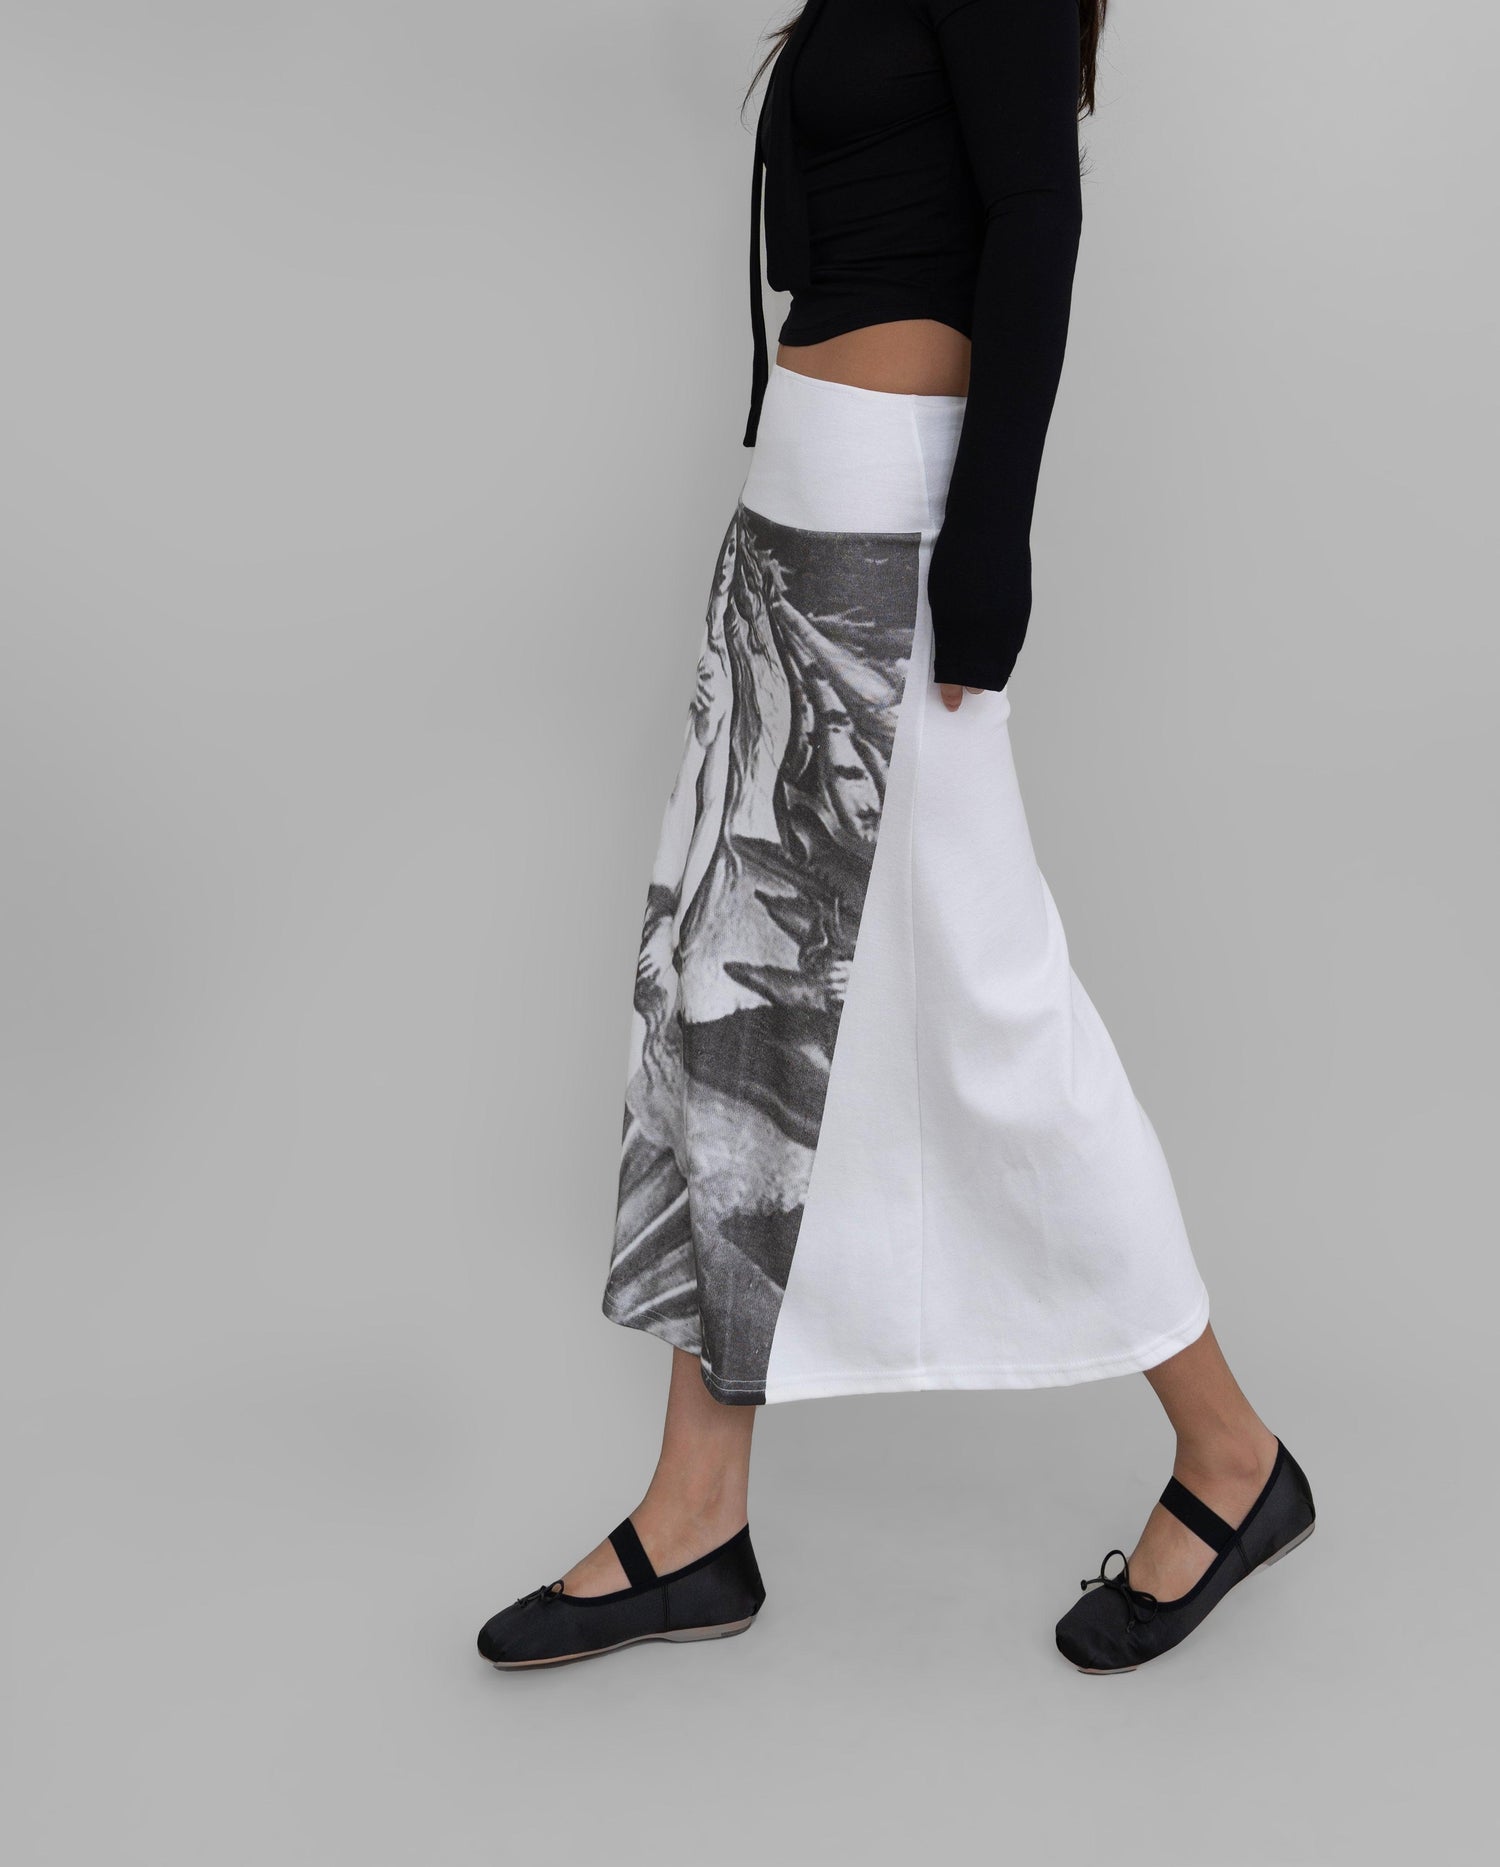 Reese Venus Graphic Flare Skirt / White - The Bekk